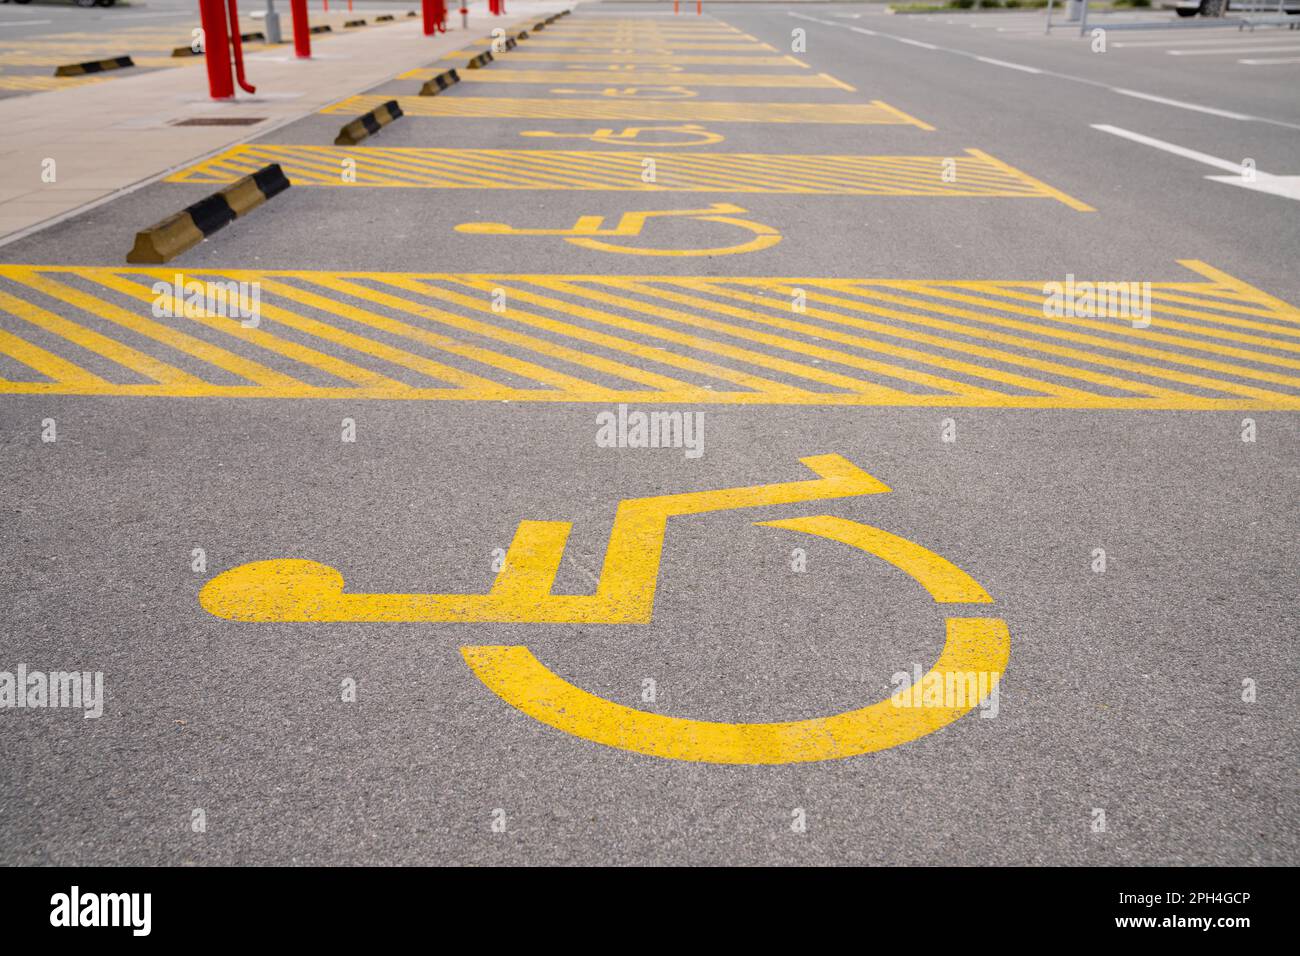 Parking handicapés avec symbole jaune. Photo de haute qualité Banque D'Images